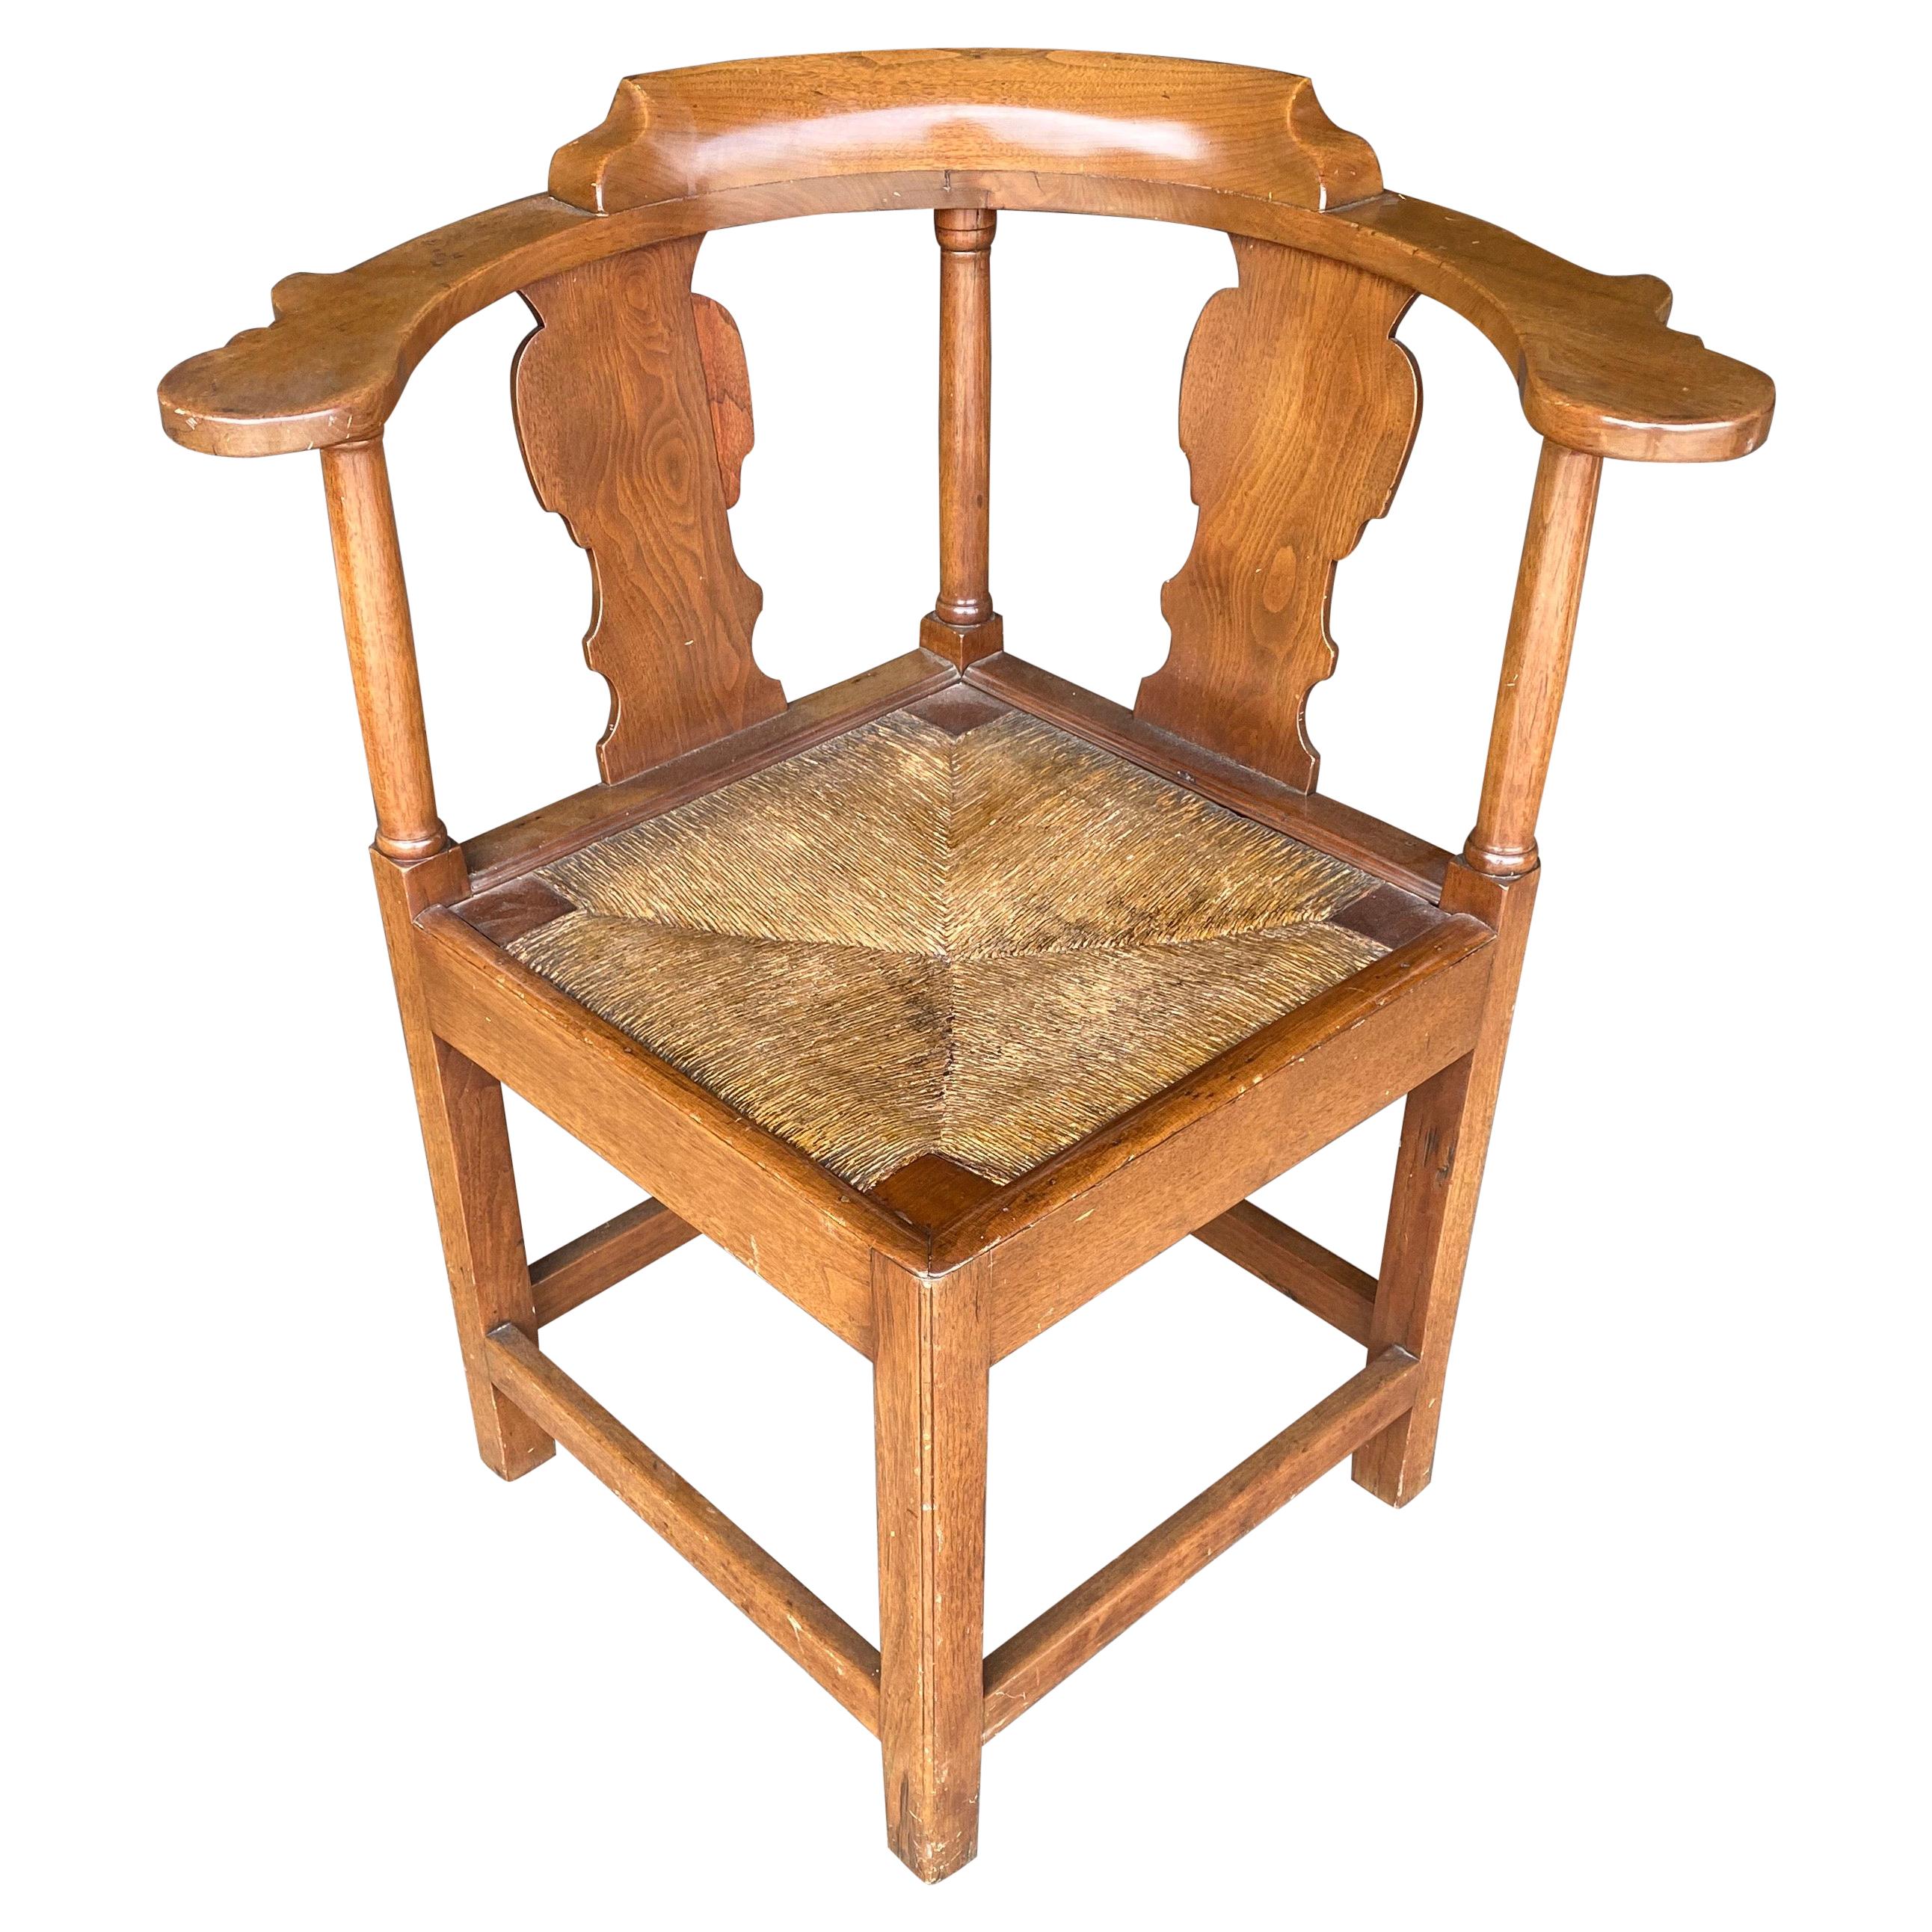 18th Century British Walnut Corner Chair with Rush Seat